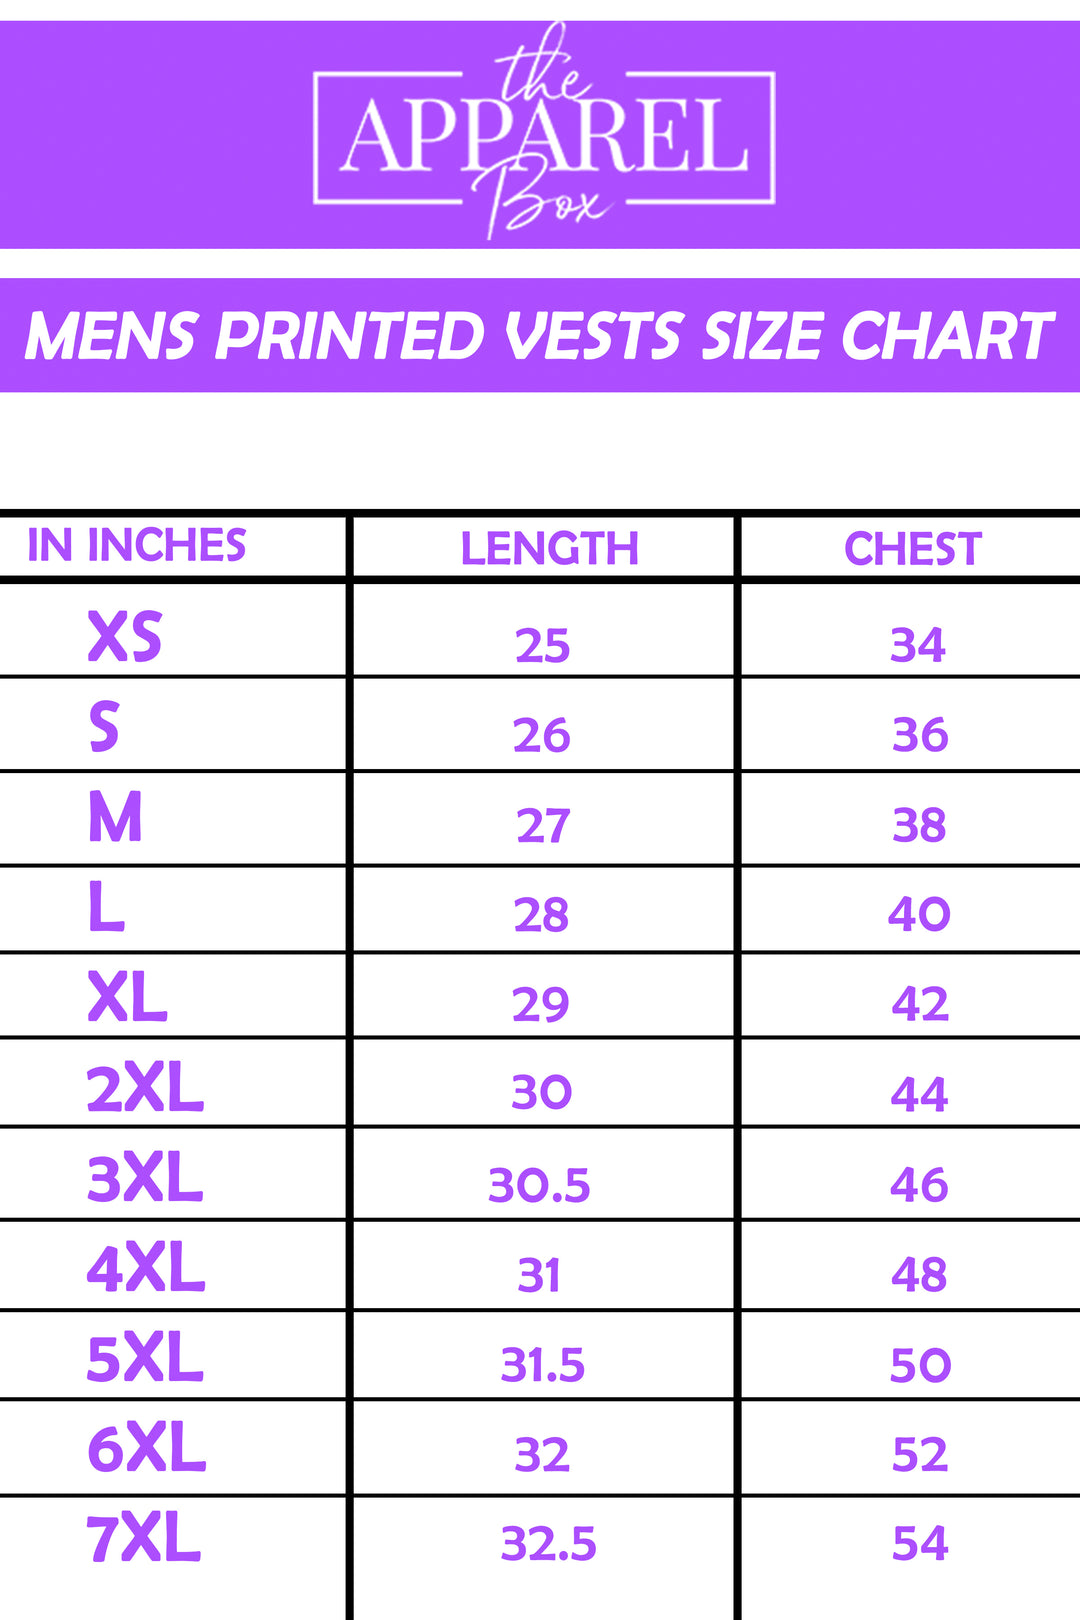 Printed Vest#1